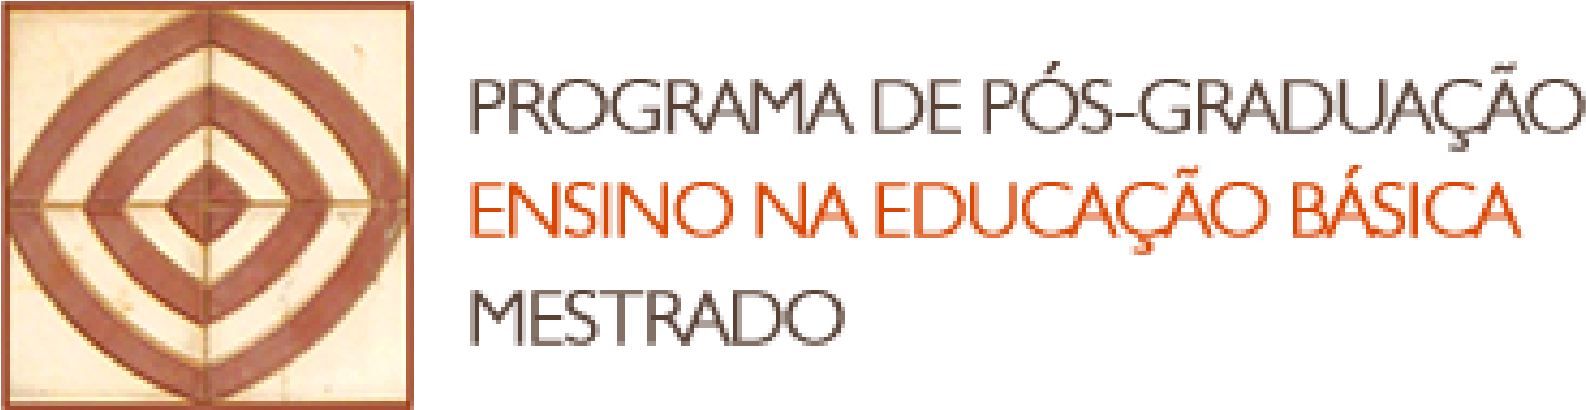 Marca CIAR UFG e marca do Programa de Pós-Graduação Ensino na Educação Básica - Mestrado